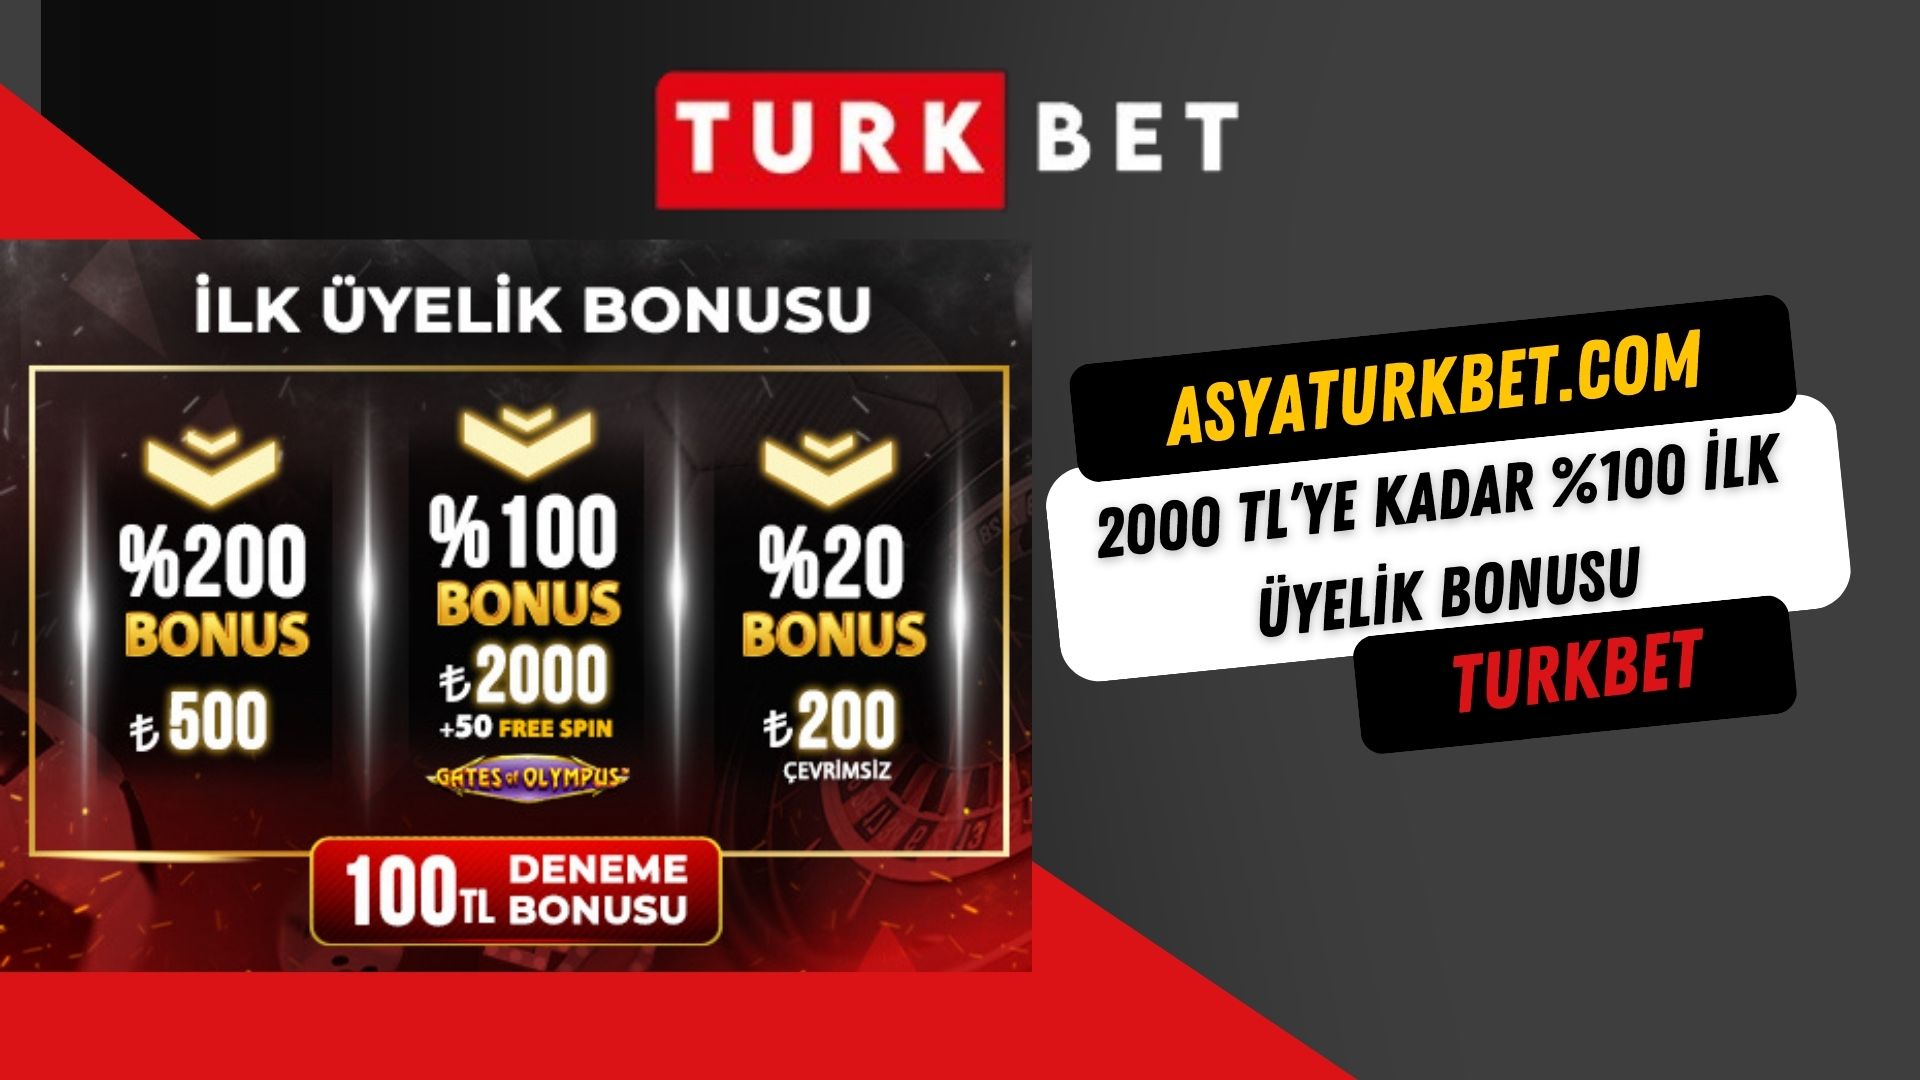 Turkbet 2000 TL’ye Kadar Yüzde 100 İlk Üyelik Bonusu